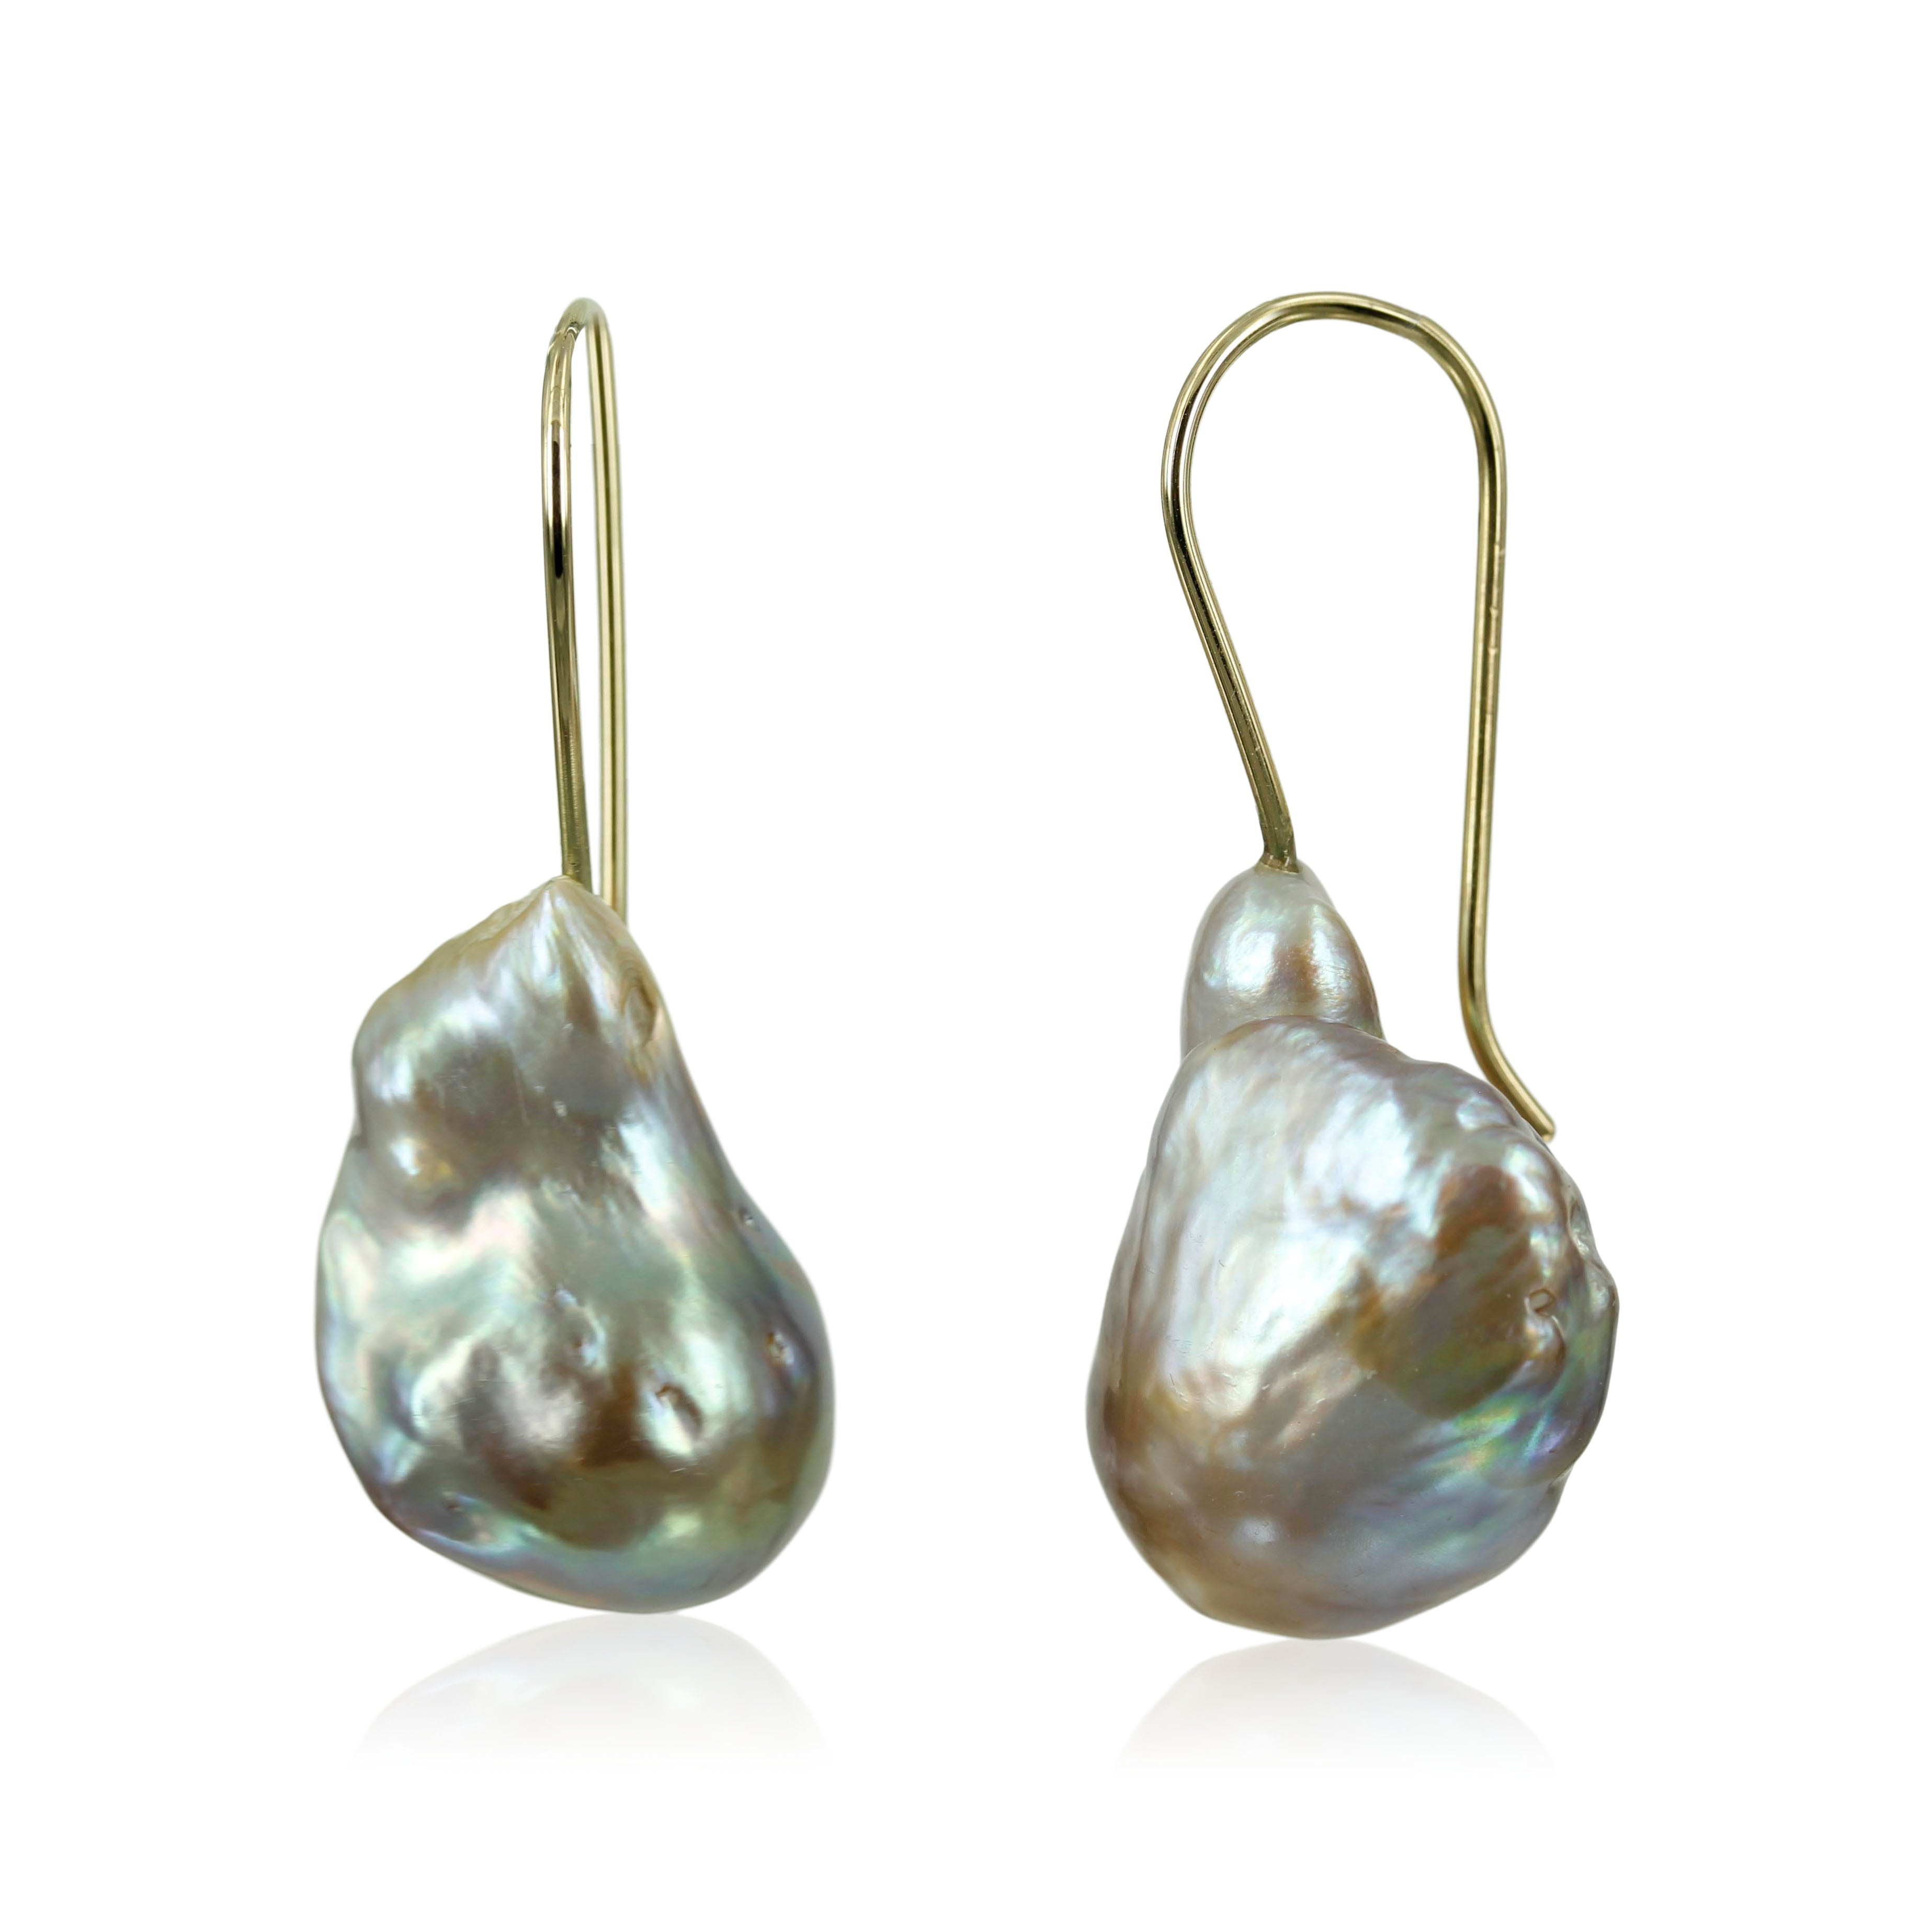 2. 14. kt. Guld ørekroge med Barokke ferskvands perler     Skønne store barok perler, smukke og enkelt design - så perlen for lov at shine.     Perlerne er lidt forskellige i udseende da det er naturen der bestemmer farve og form.